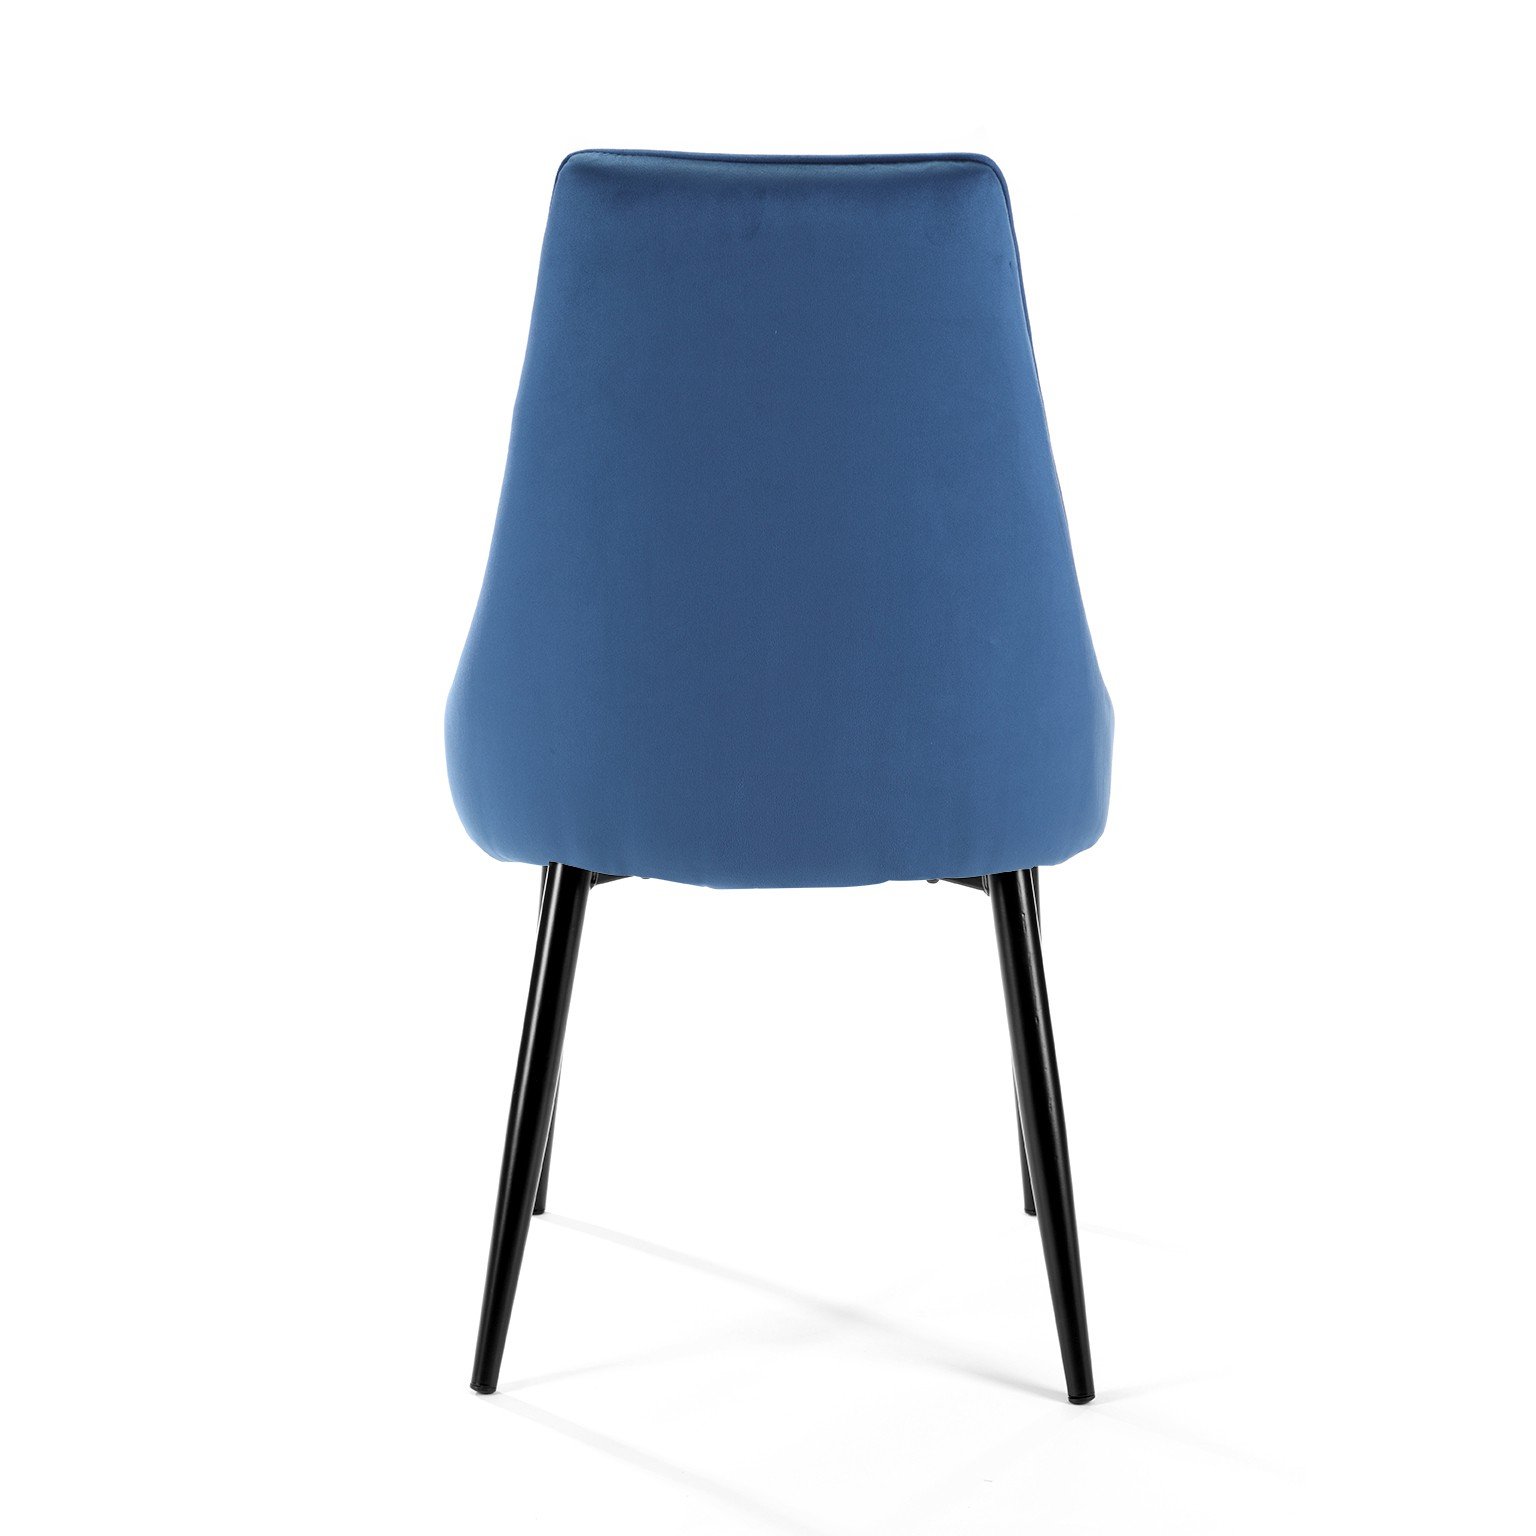 4-rių kėdžių komplektas SJ.054, tamsiai mėlynas - 5